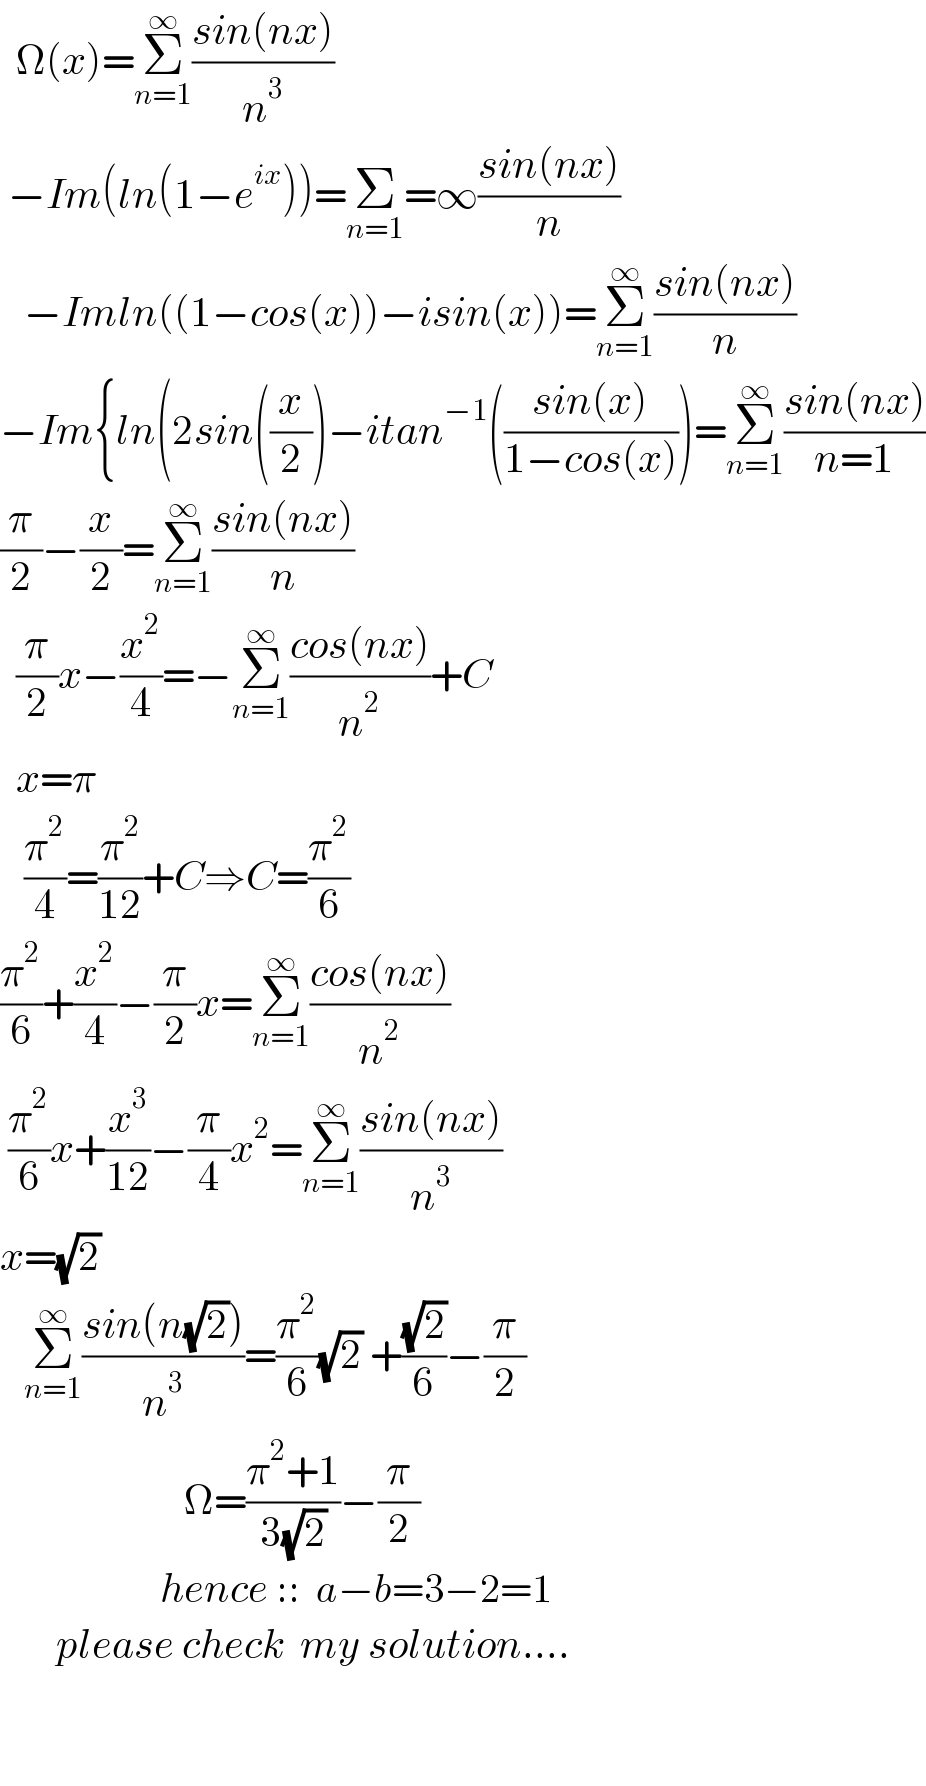   Ω(x)=Σ_(n=1) ^∞ ((sin(nx))/n^3 )   −Im(ln(1−e^(ix) ))=Σ_(n=1) =∞((sin(nx))/n)     −Imln((1−cos(x))−isin(x))=Σ_(n=1) ^∞ ((sin(nx))/n)  −Im{ln(2sin((x/2))−itan^(−1) (((sin(x))/(1−cos(x))))=Σ_(n=1) ^∞ ((sin(nx))/(n=1))  (π/2)−(x/2)=Σ_(n=1) ^∞ ((sin(nx))/n)    (π/2)x−(x^2 /4)=−Σ_(n=1) ^∞ ((cos(nx))/n^2 )+C    x=π     (π^2 /4)=(π^2 /(12))+C⇒C=(π^2 /6)  (π^2 /6)+(x^2 /4)−(π/2)x=Σ_(n=1) ^∞ ((cos(nx))/n^2 )   (π^2 /6)x+(x^3 /(12))−(π/4)x^2 =Σ_(n=1) ^∞ ((sin(nx))/n^3 )  x=(√2)     Σ_(n=1) ^∞ ((sin(n(√2)))/n^3 )=(π^2 /6)(√2) +((√2)/6)−(π/2)                         Ω=((π^2 +1)/(3(√2)))−(π/2)                       hence ::  a−b=3−2=1         please check  my solution....           